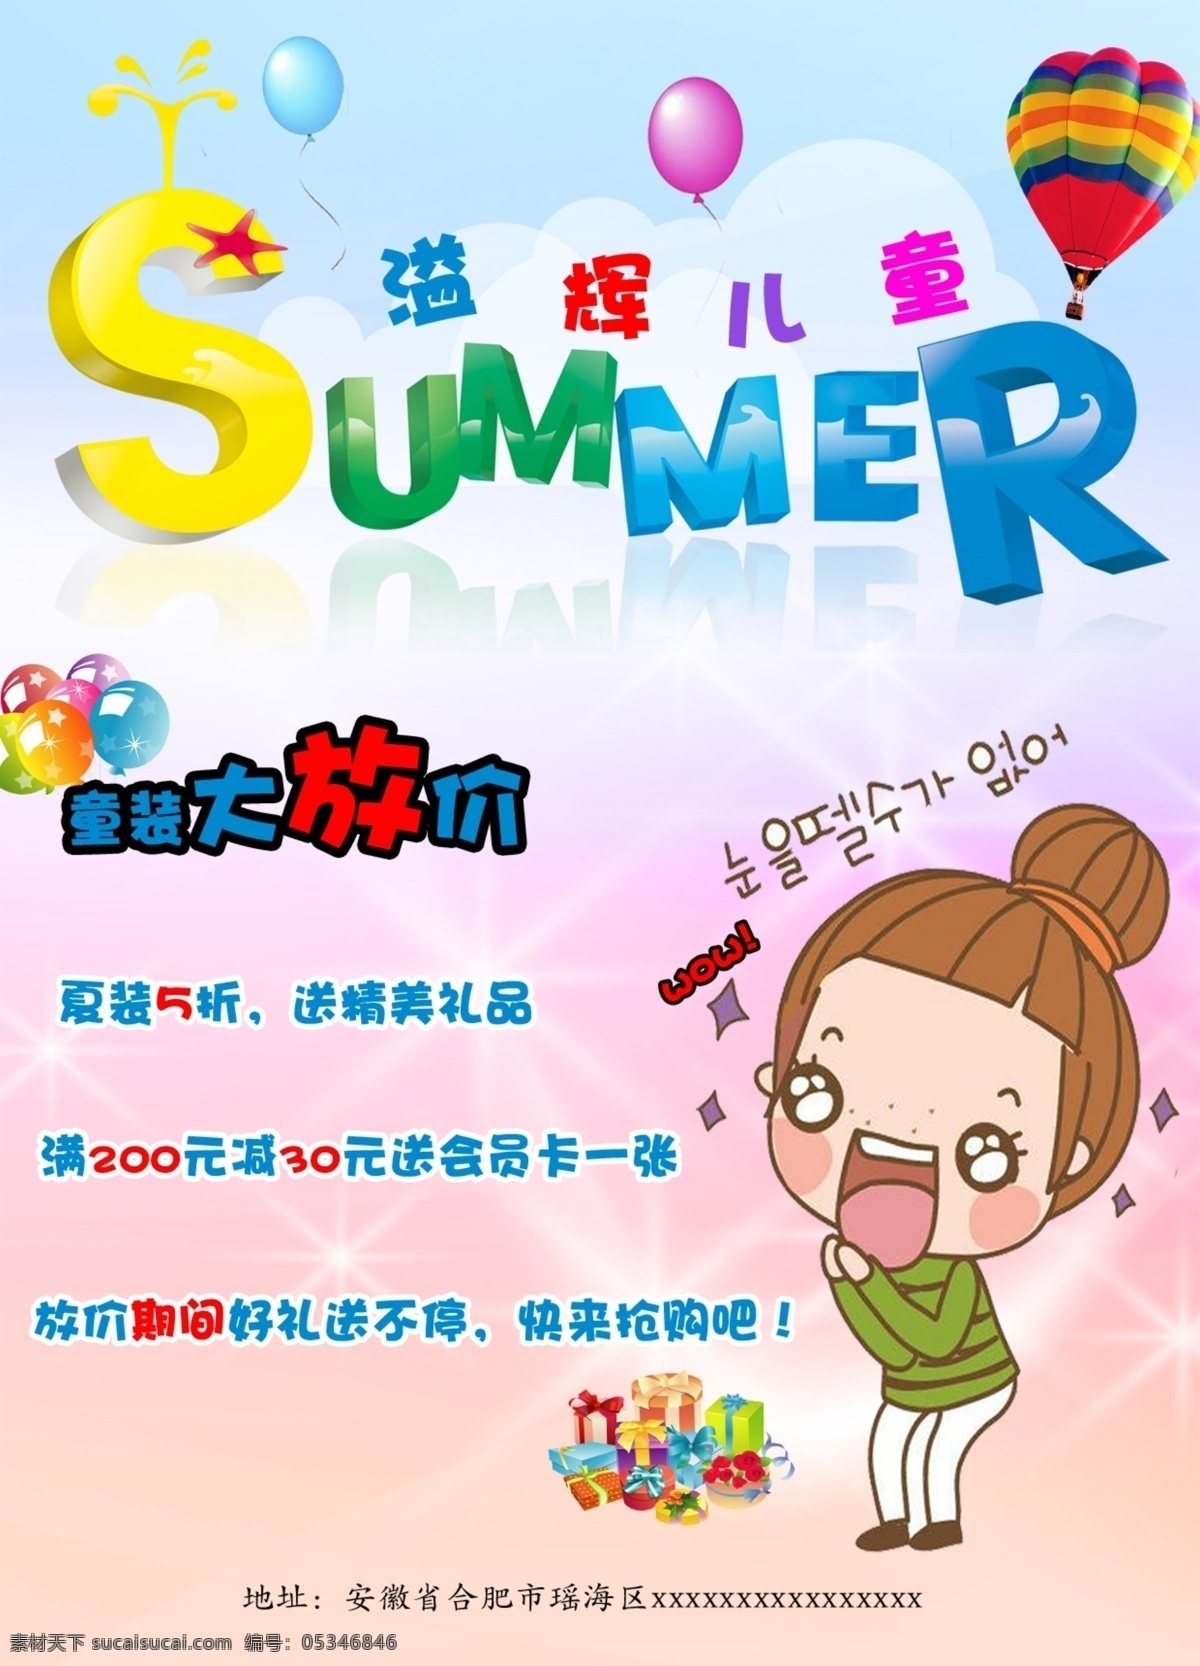 夏季 儿童服装 促销 使用 起球 卡通人物 礼品 白云 闪光星星 字体 背景倒影 白色